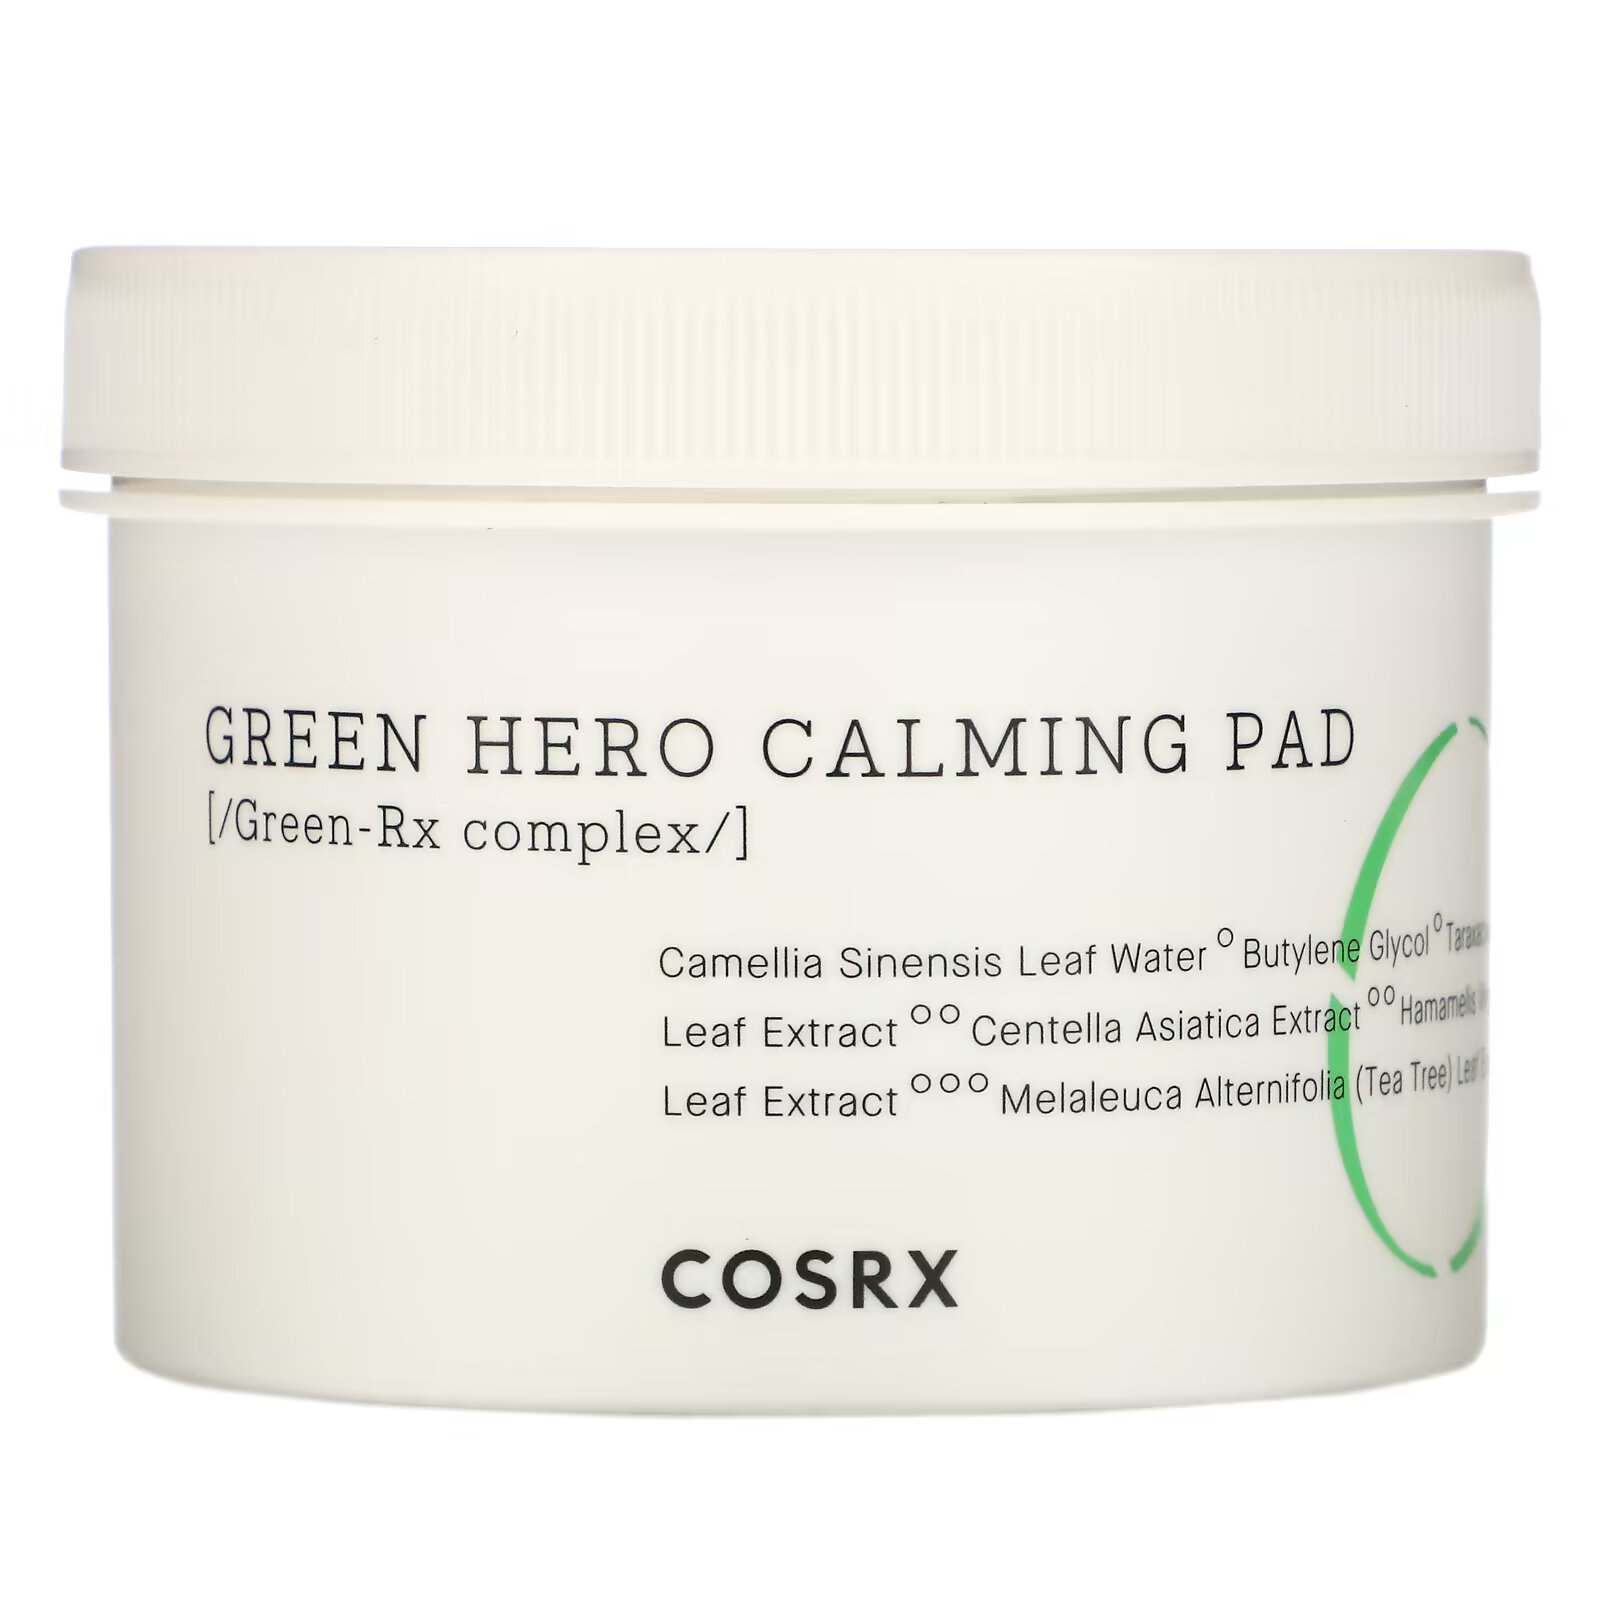 Cosrx, One Step Green Hero Calming Pad, успокаивающие диски, 70 шт., 135 мл (4,56 жидк. унции) пады для лица успокаивающие cosrx one step green hero calming pad 70